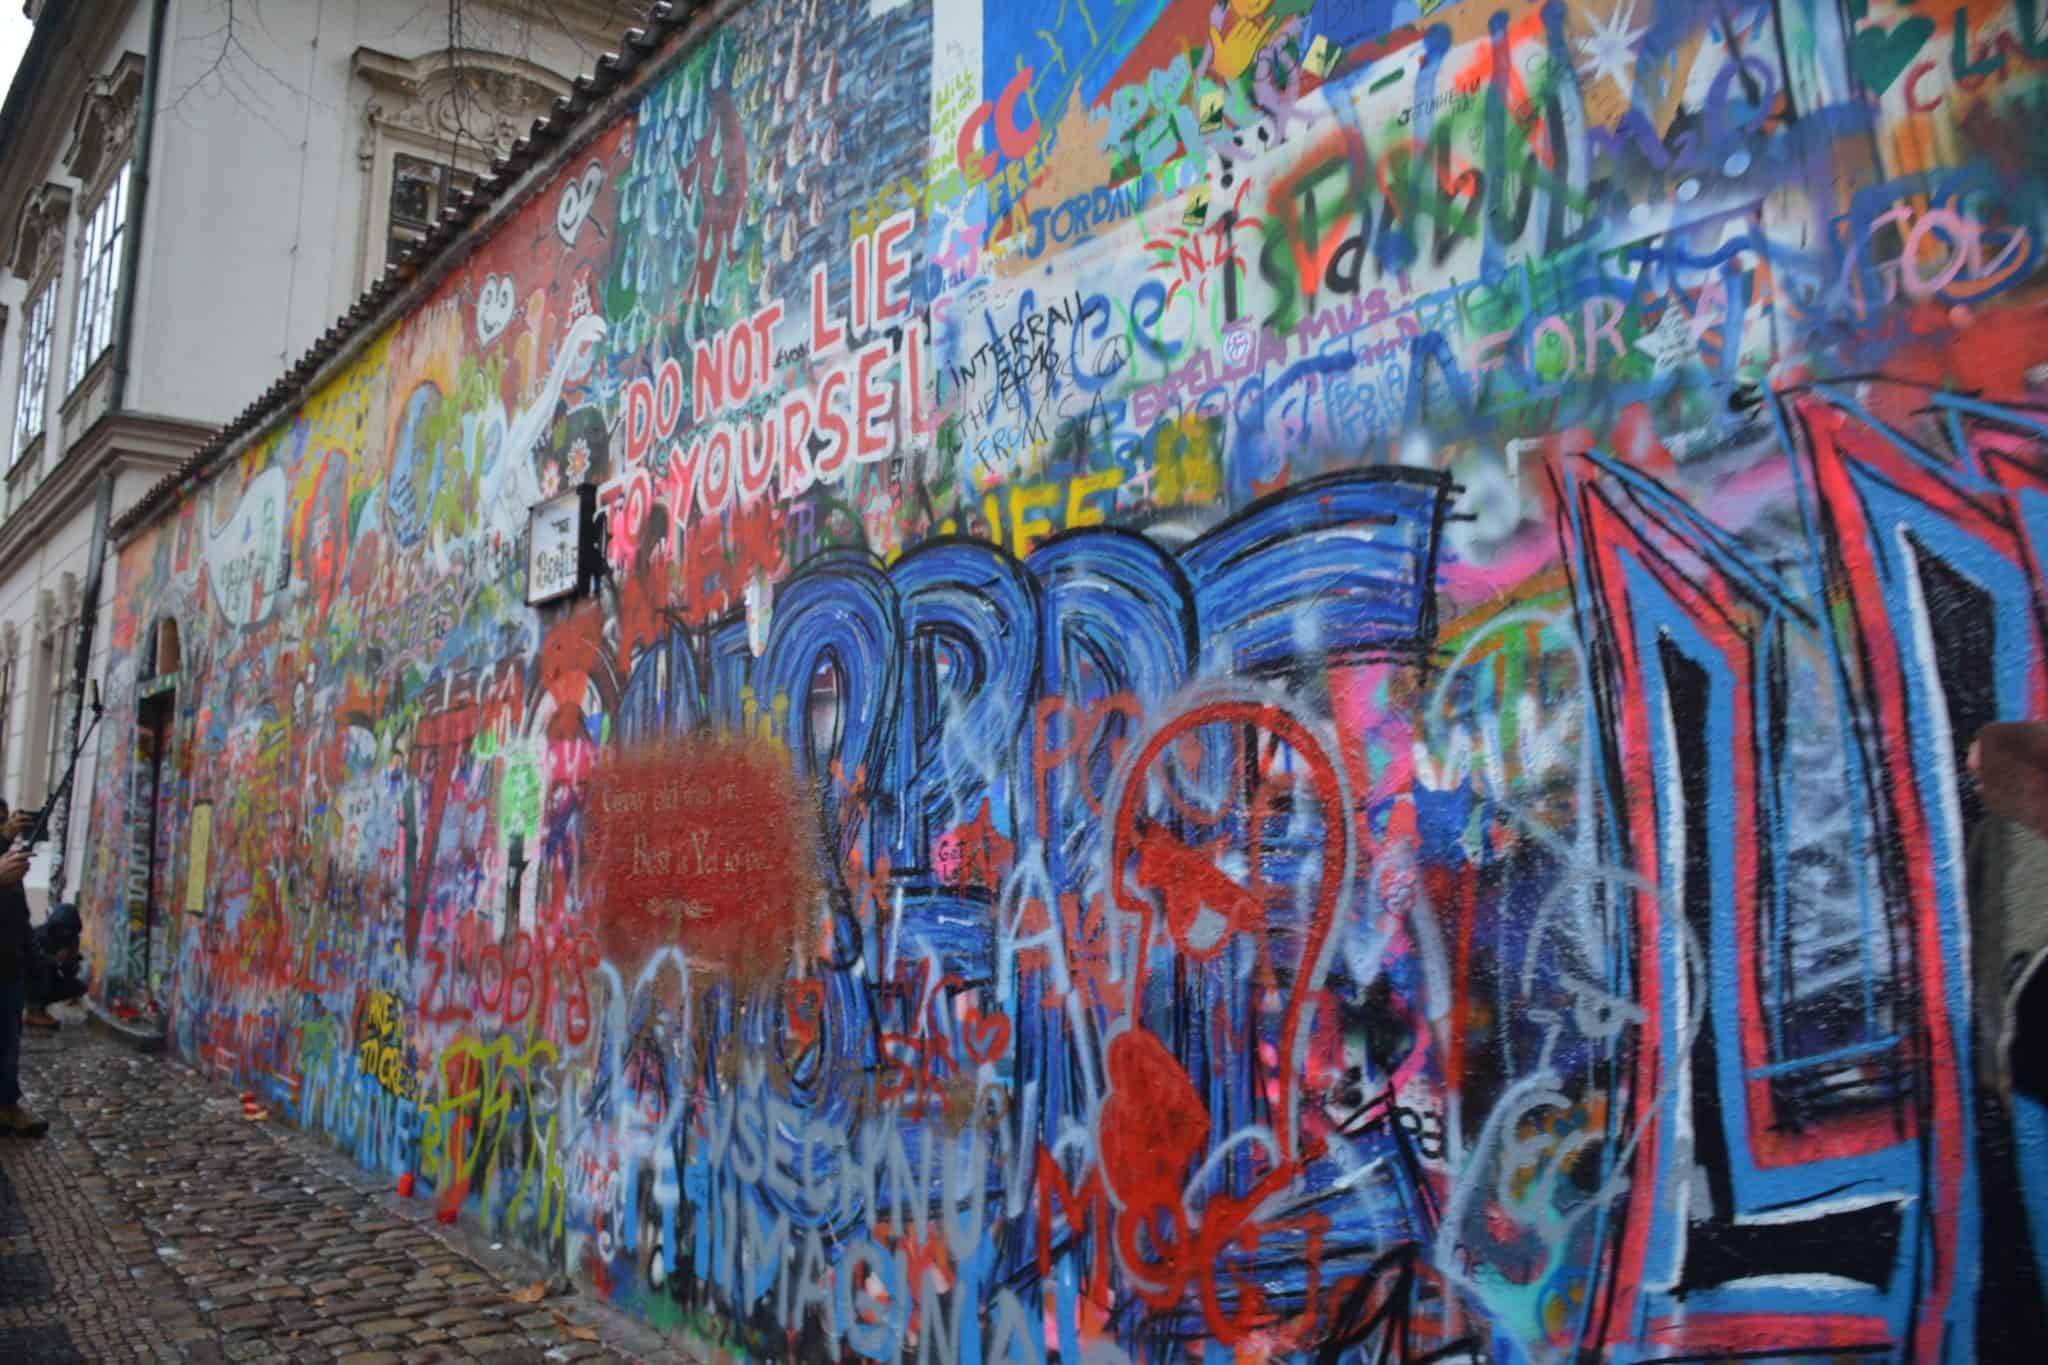 John Lennon Wall in de hoofdstad van Tsjechië